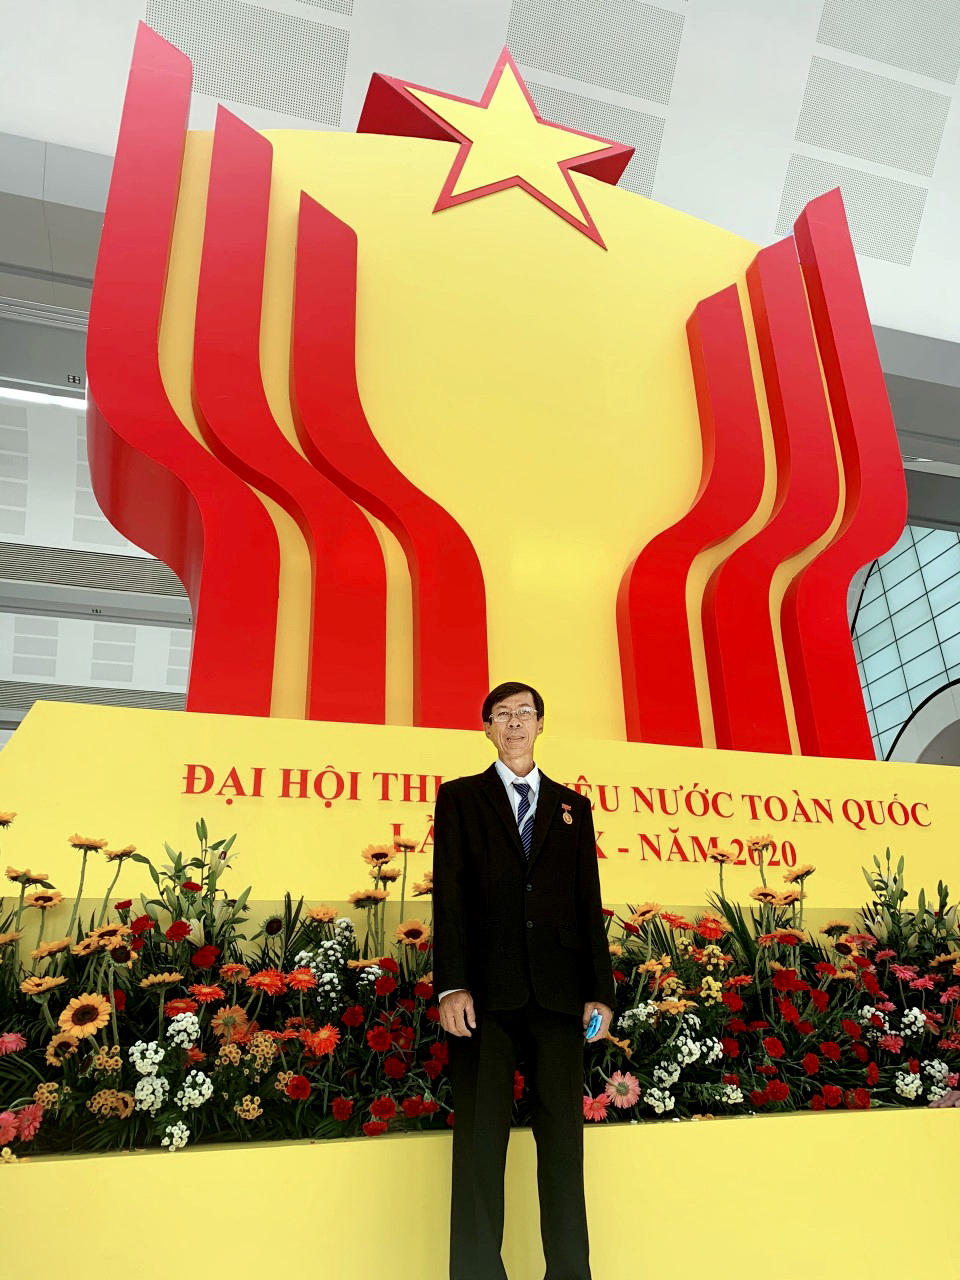 Anh hùng Lao động Trương Thái Sơn tham dự đại hội thi đua yêu nước 2020  